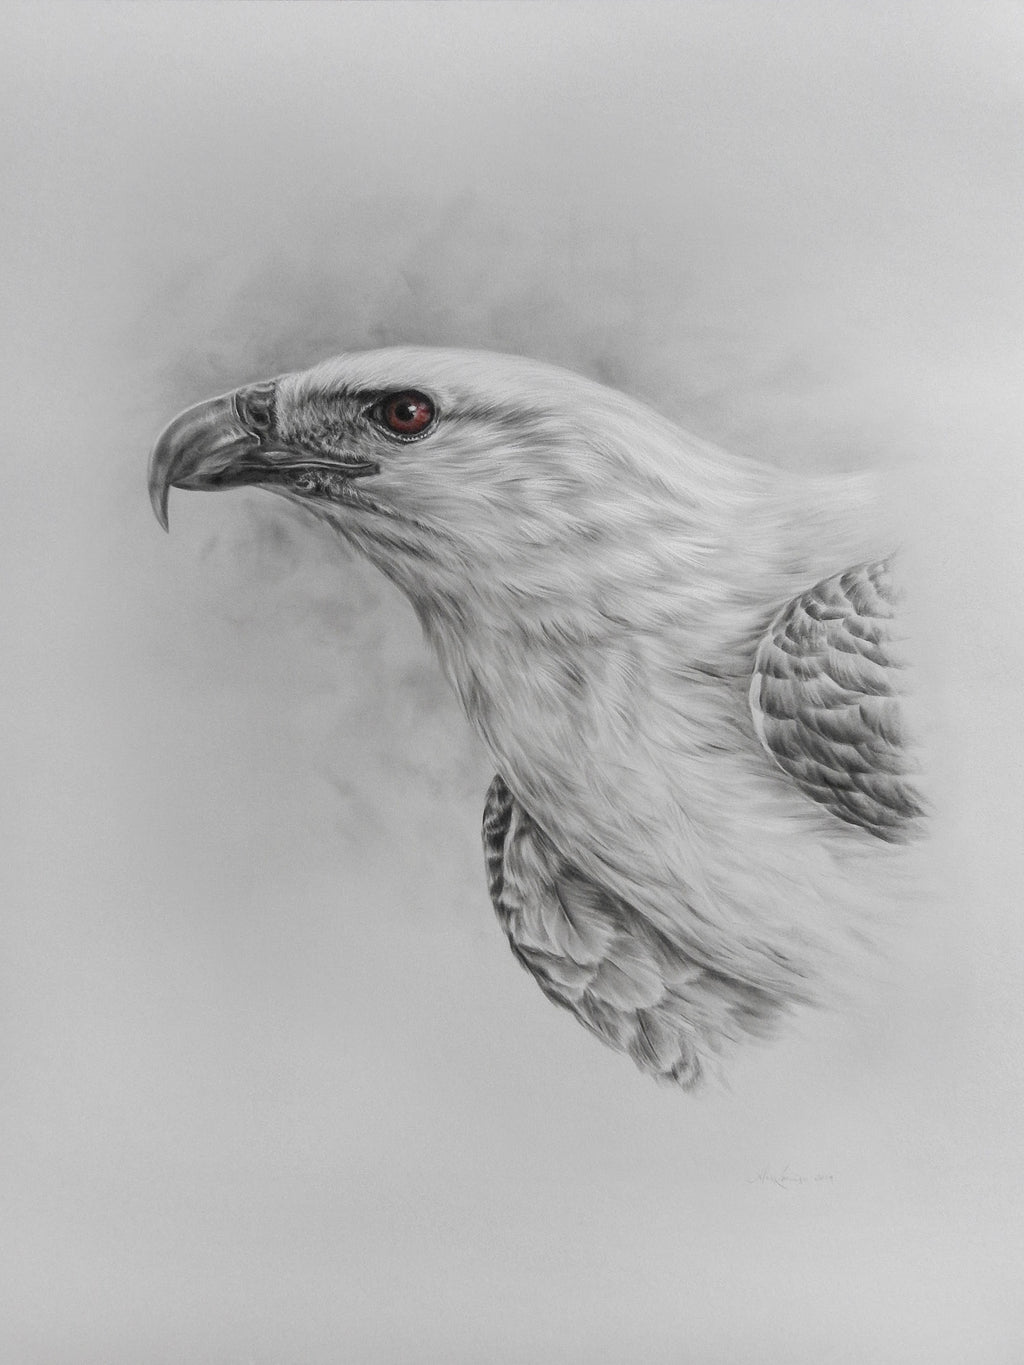 Alex Louisa - "White-bellied Sea Eagle"